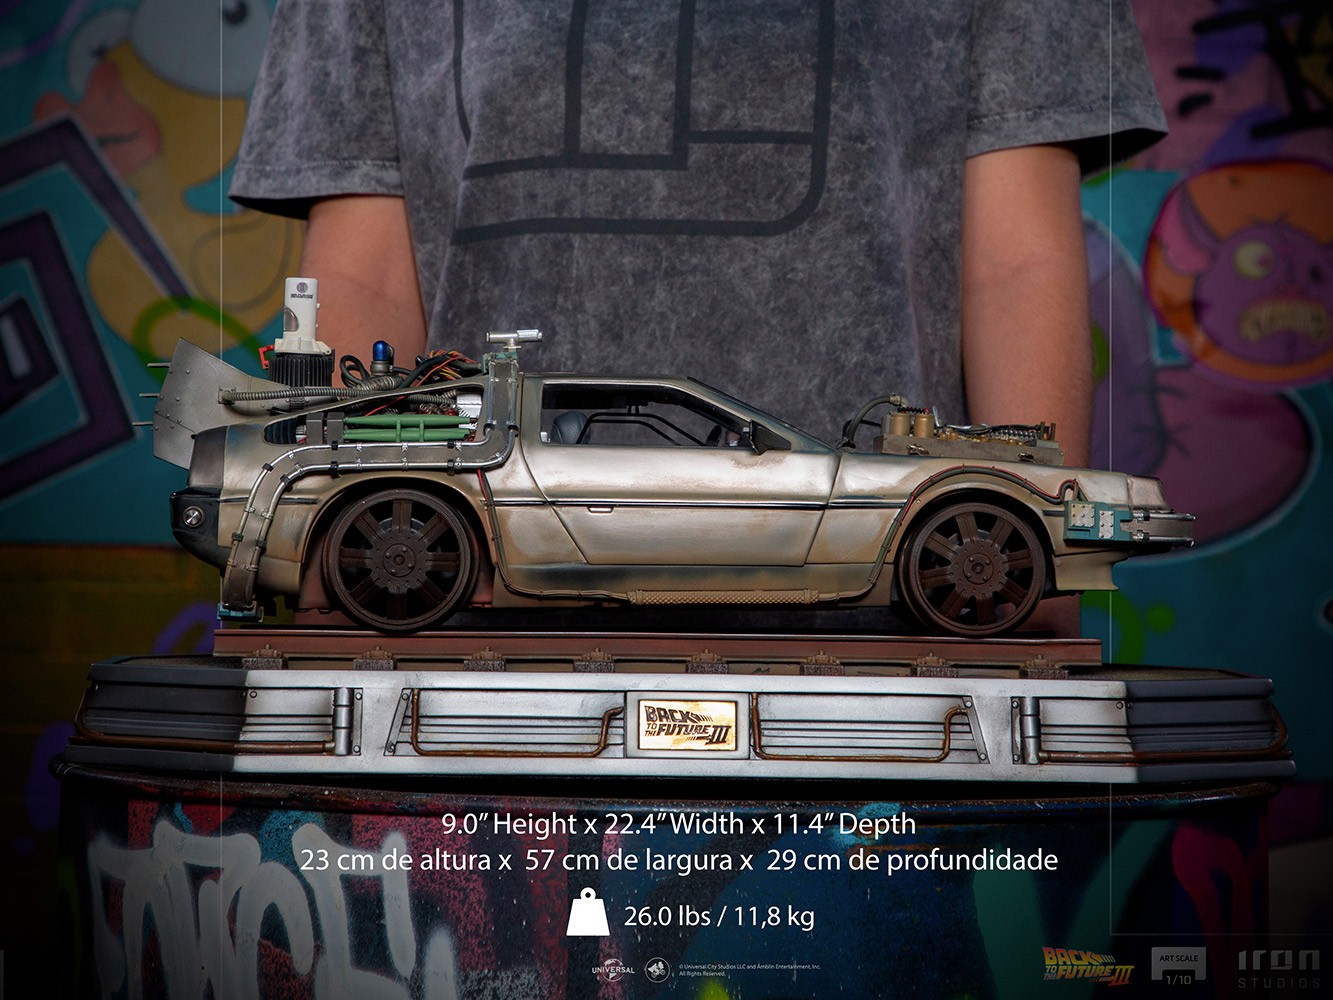 DeLorean III